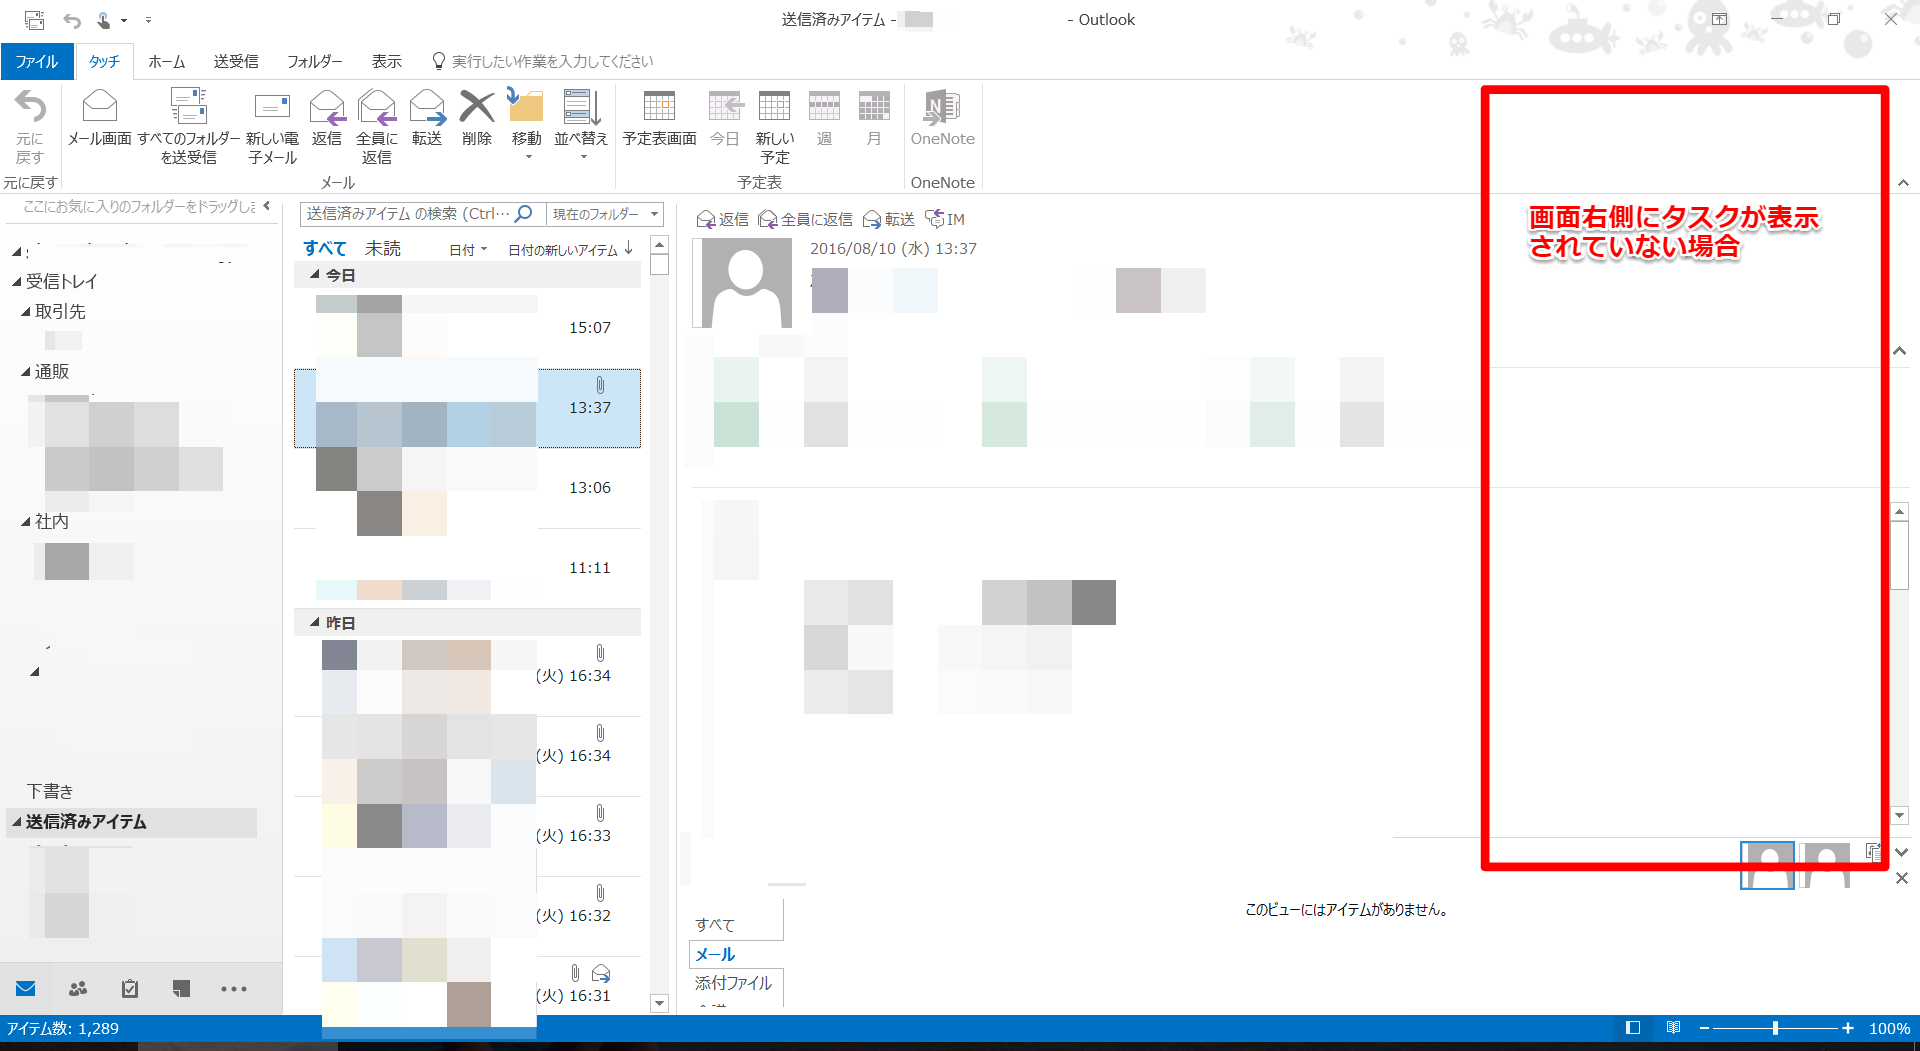 Outlookのto Doとタスク機能を使い 大切な仕事のスケジュールを忘れずに把握し続ける方法とは 教えてスーツマン